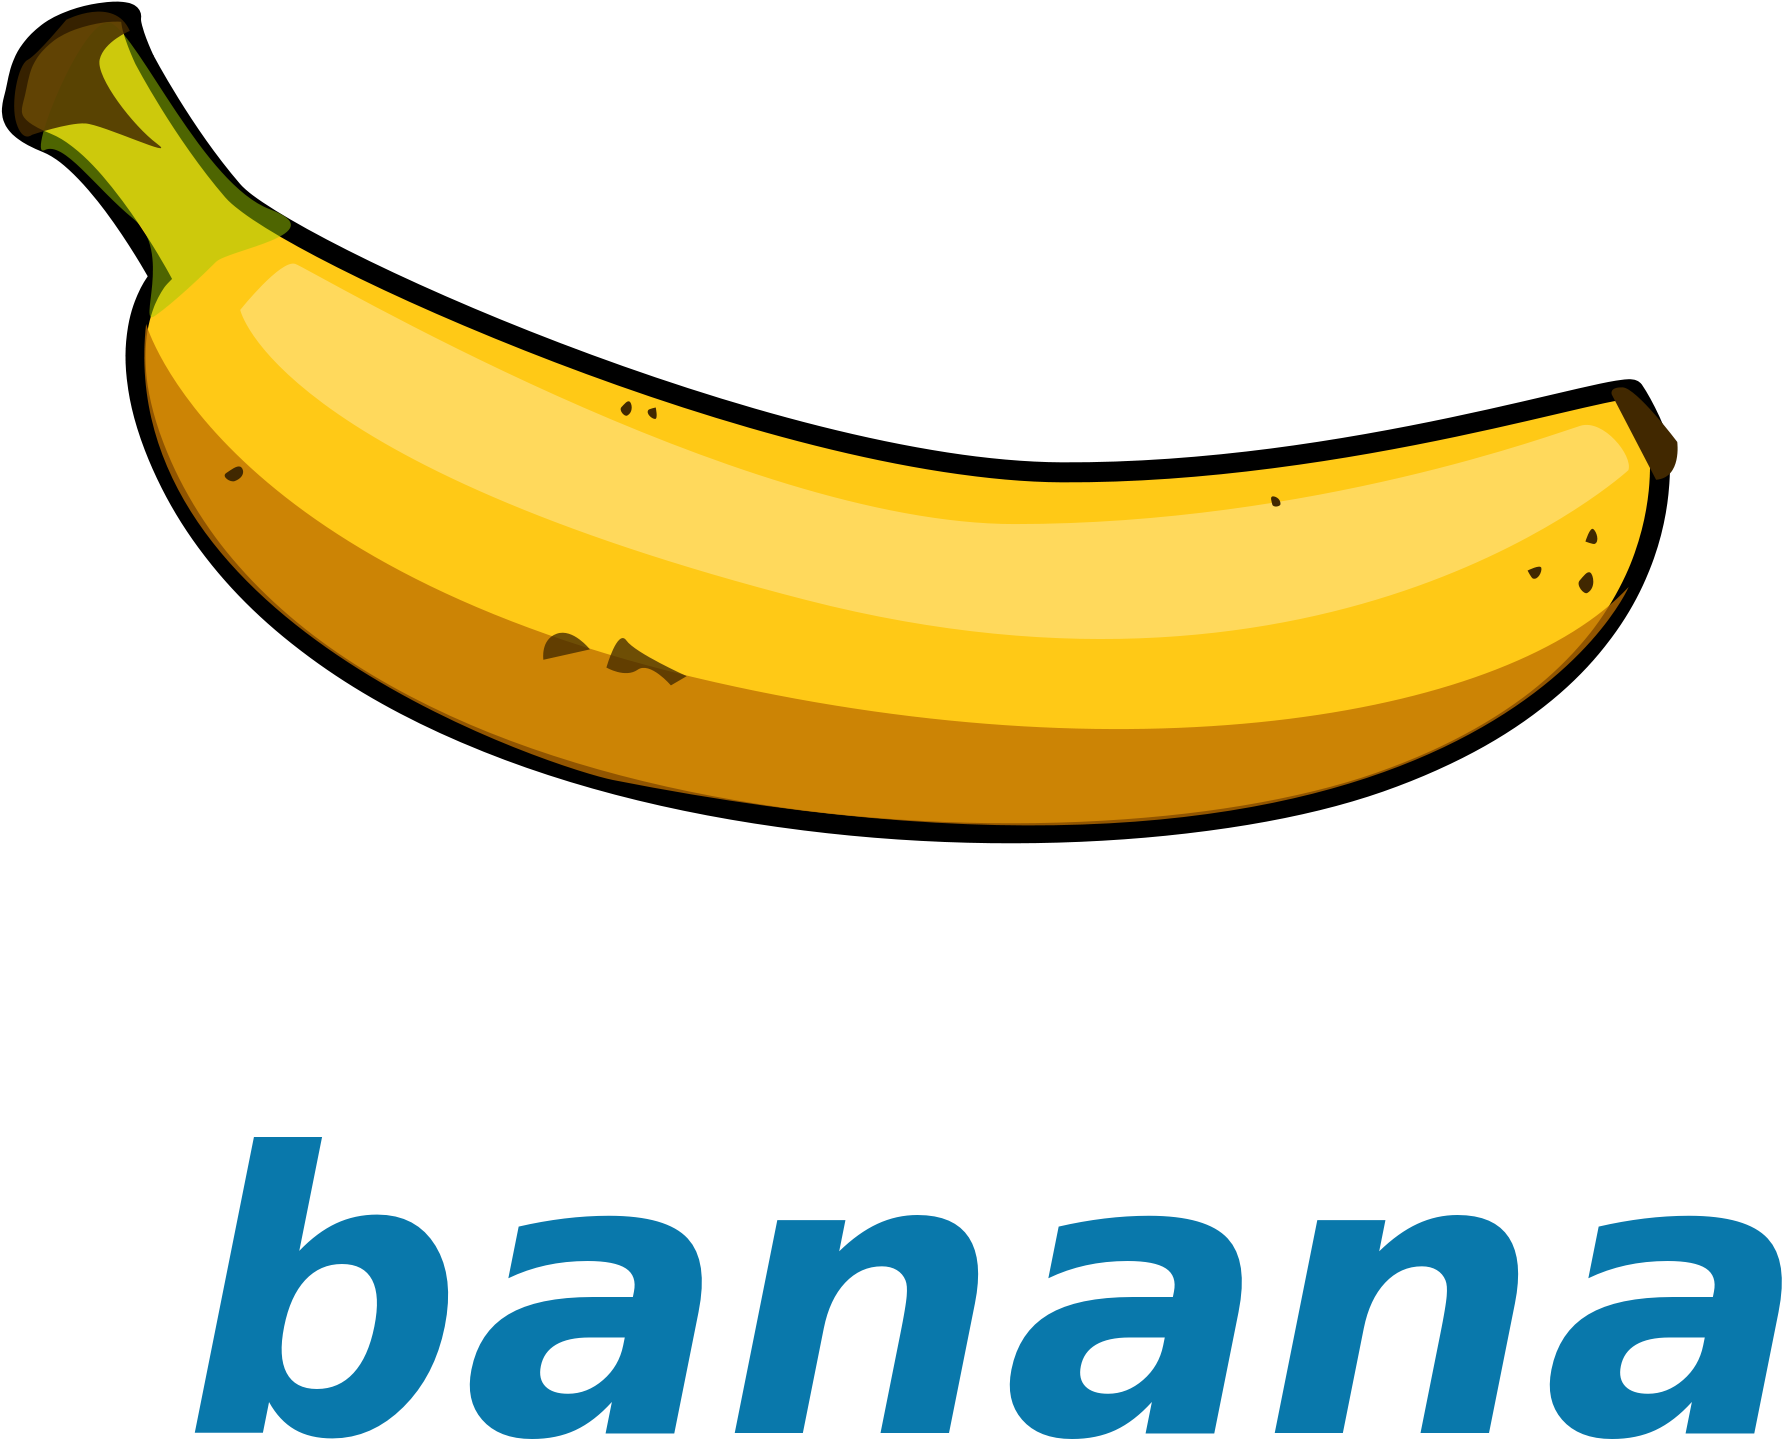 Banana Clipart - File - Wikivoc - - Flashcard Banana (2000x2000)